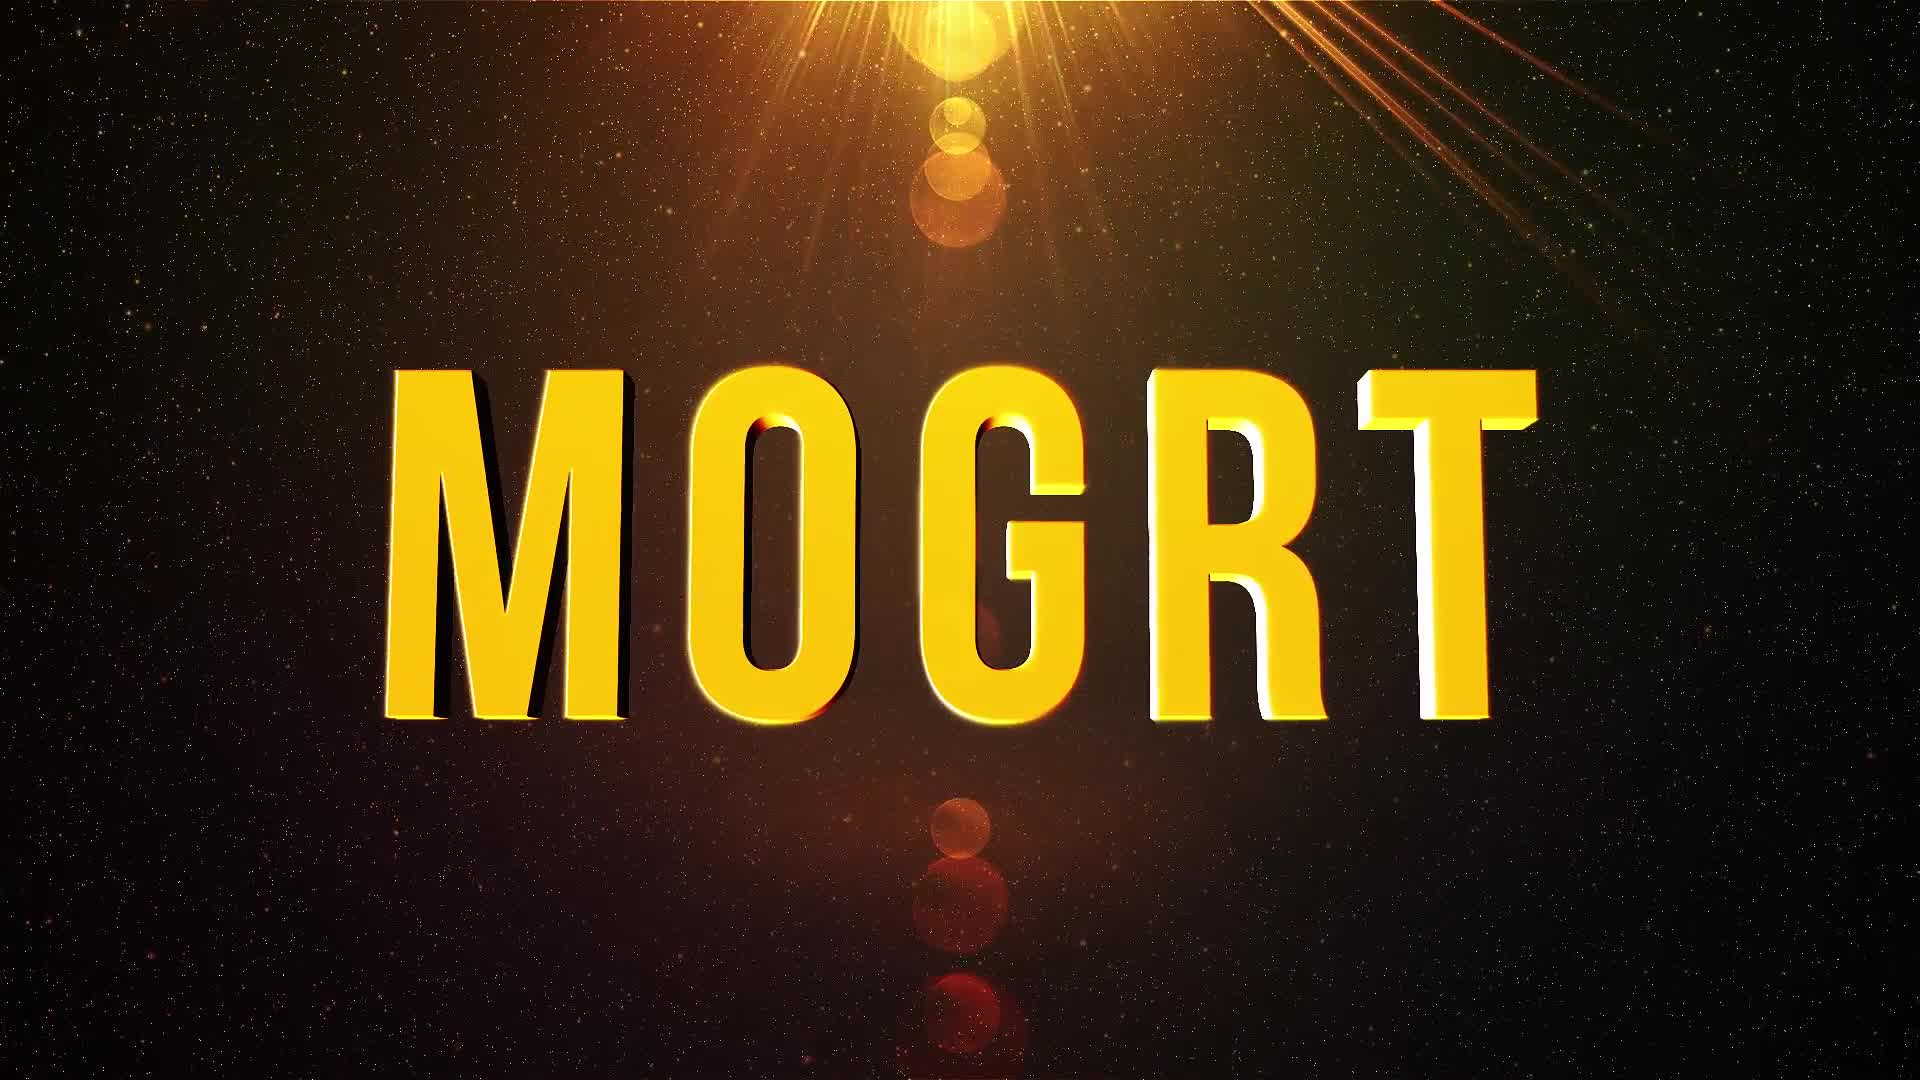 Epic Title Intro (mogrt) Videohive 23516202 Premiere Pro Image 8